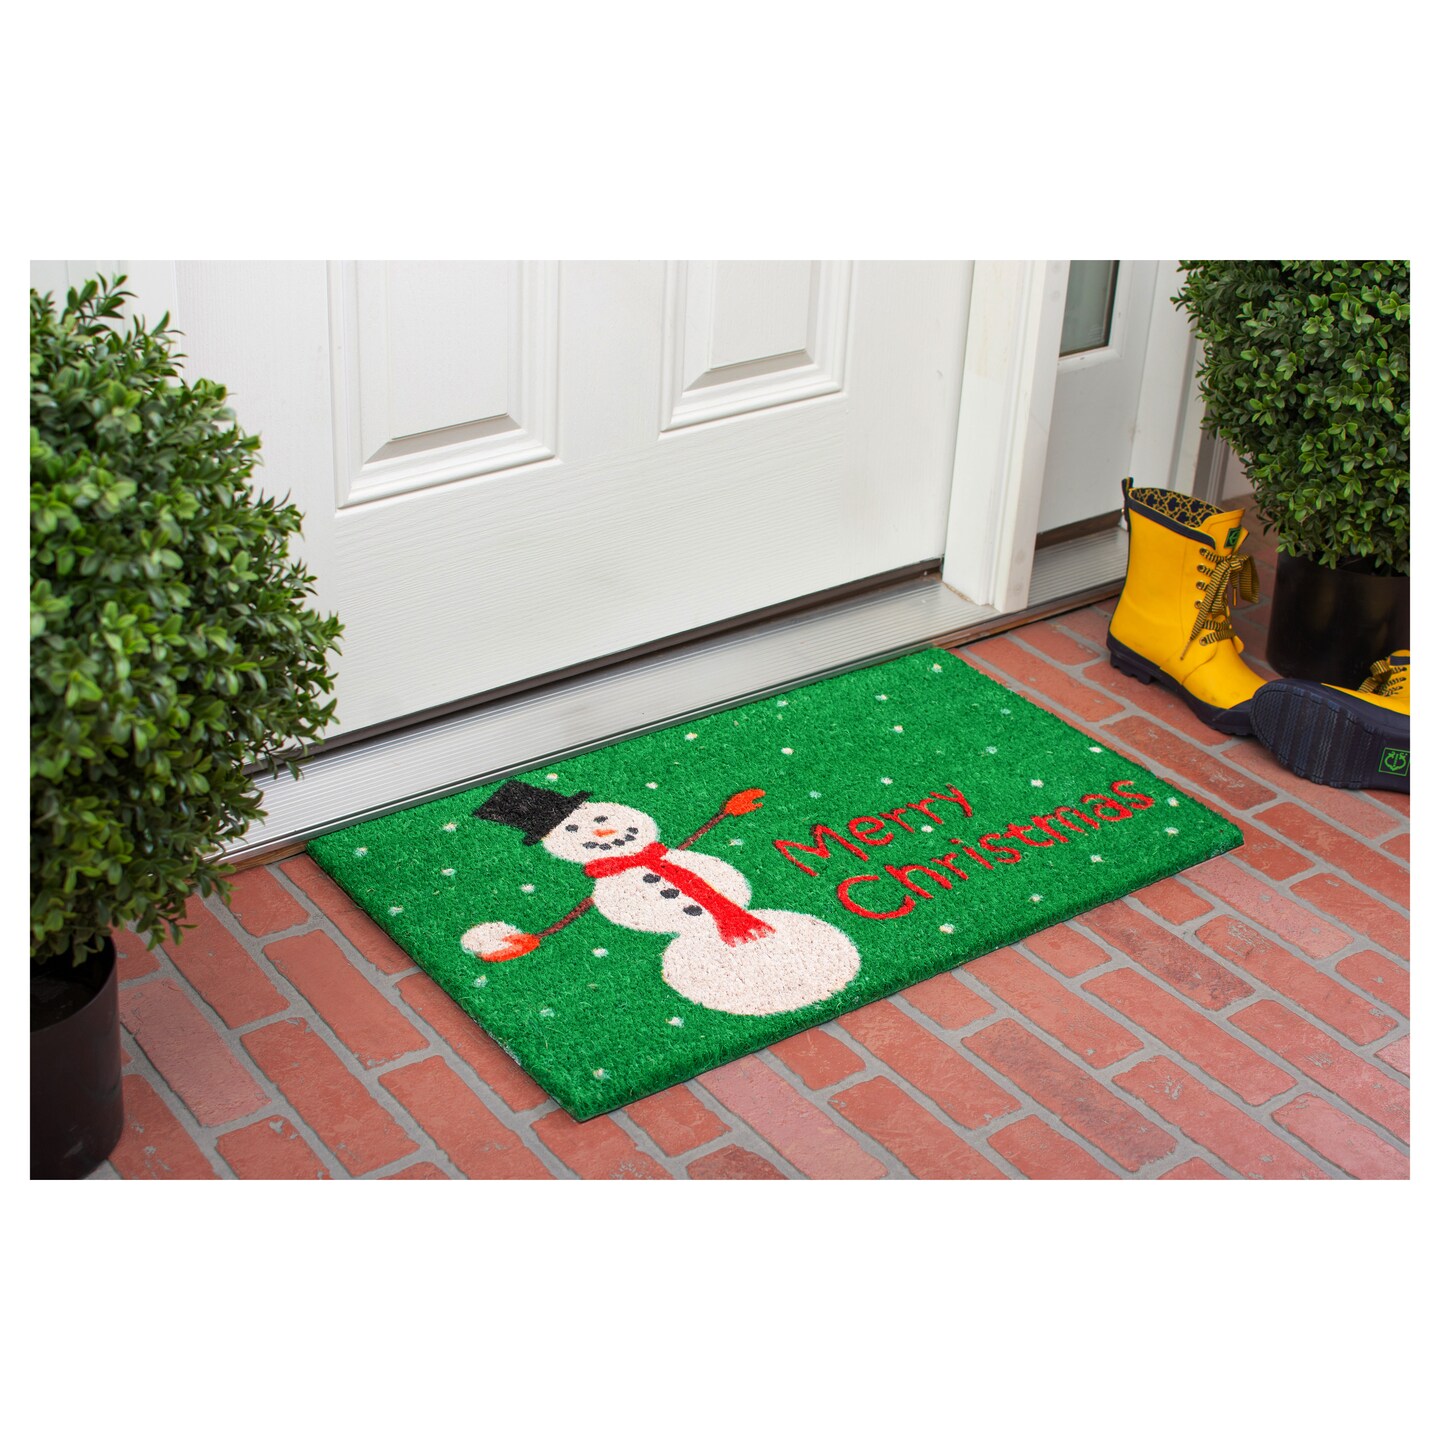 Christmas Snowman Doormat